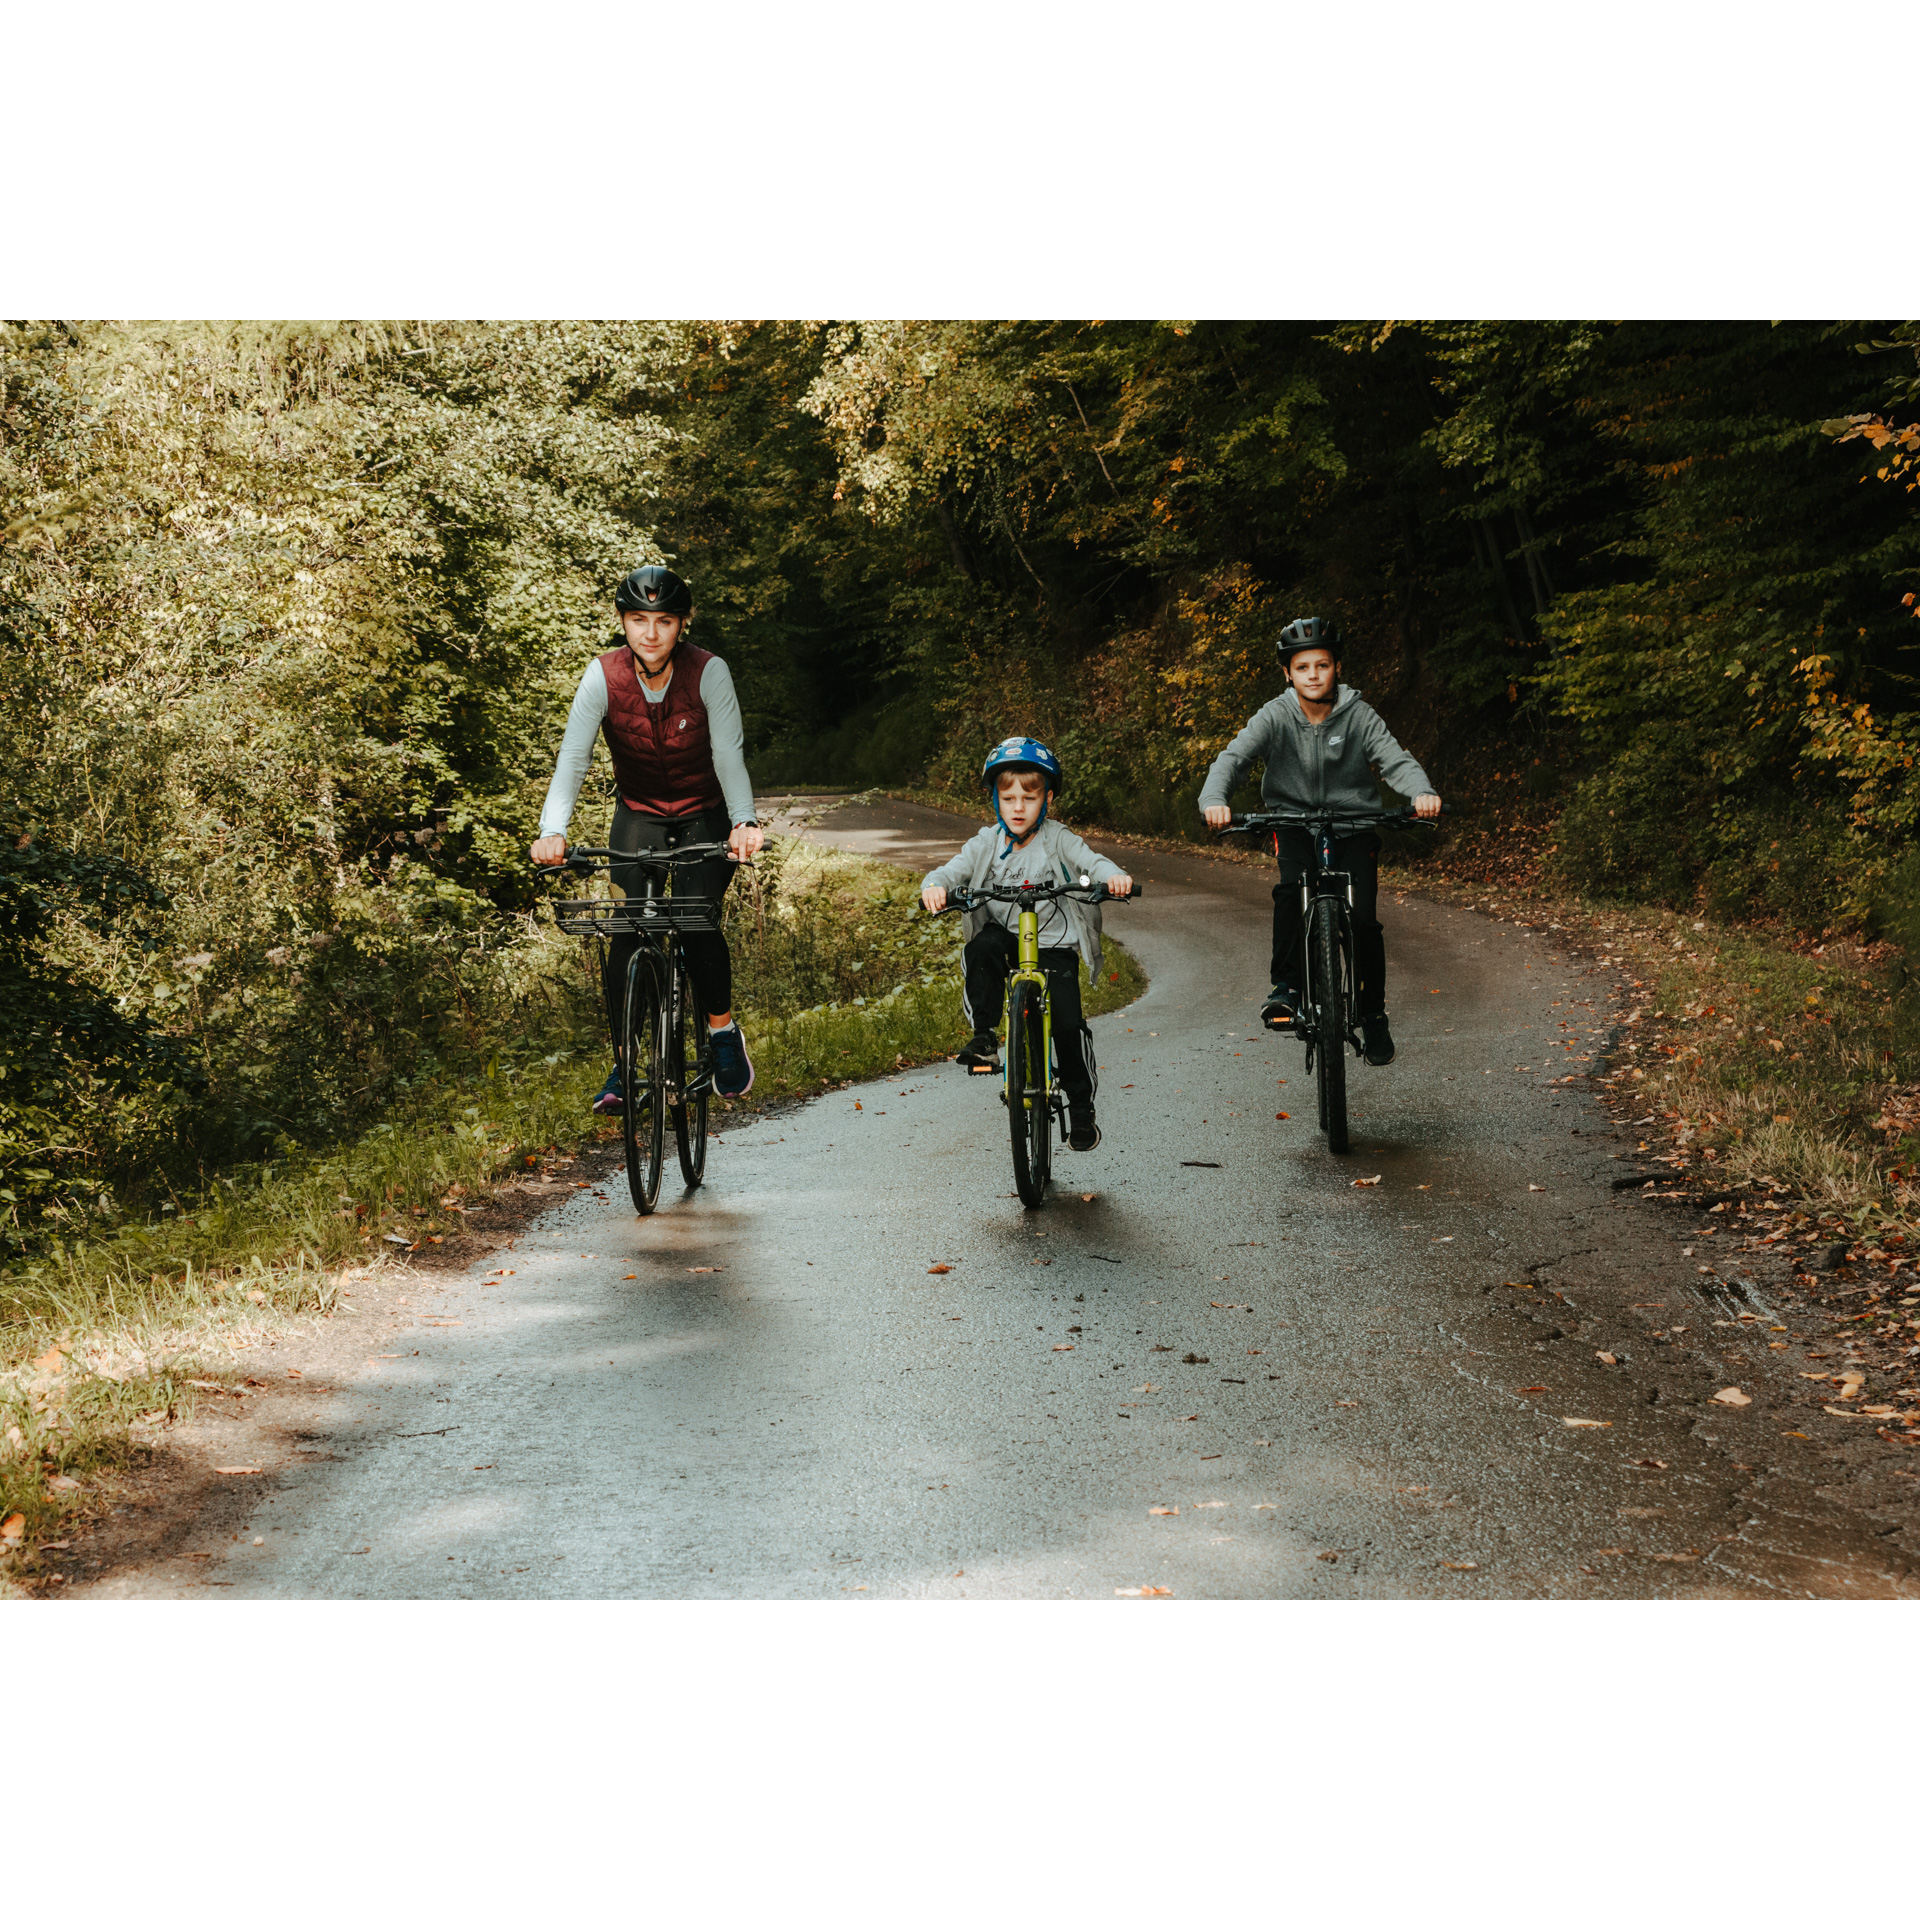 Kobieta i dwójka chłopców w kaskach jadący na rowerach asfaltową, mokrą drogą wśród zielonych drzew